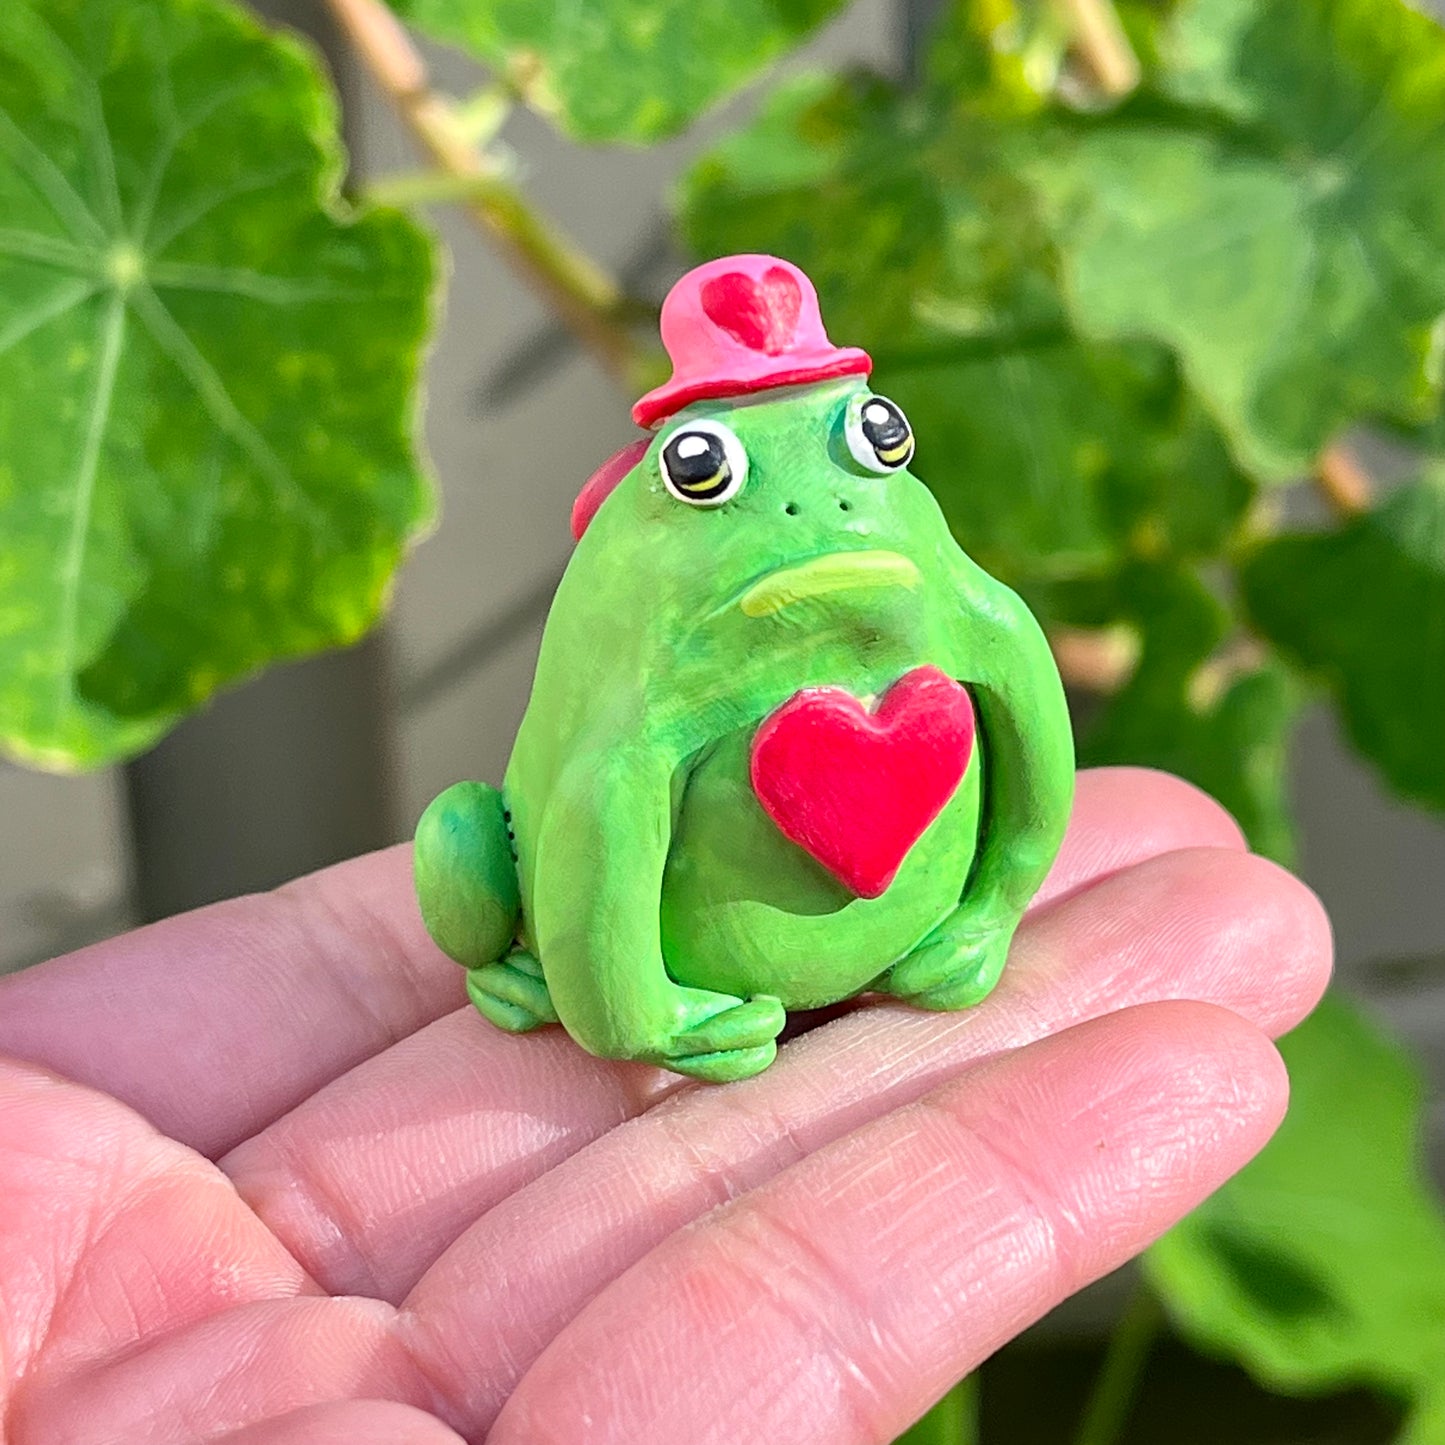 Valentine's Heart Hat Frog Friend Figurine